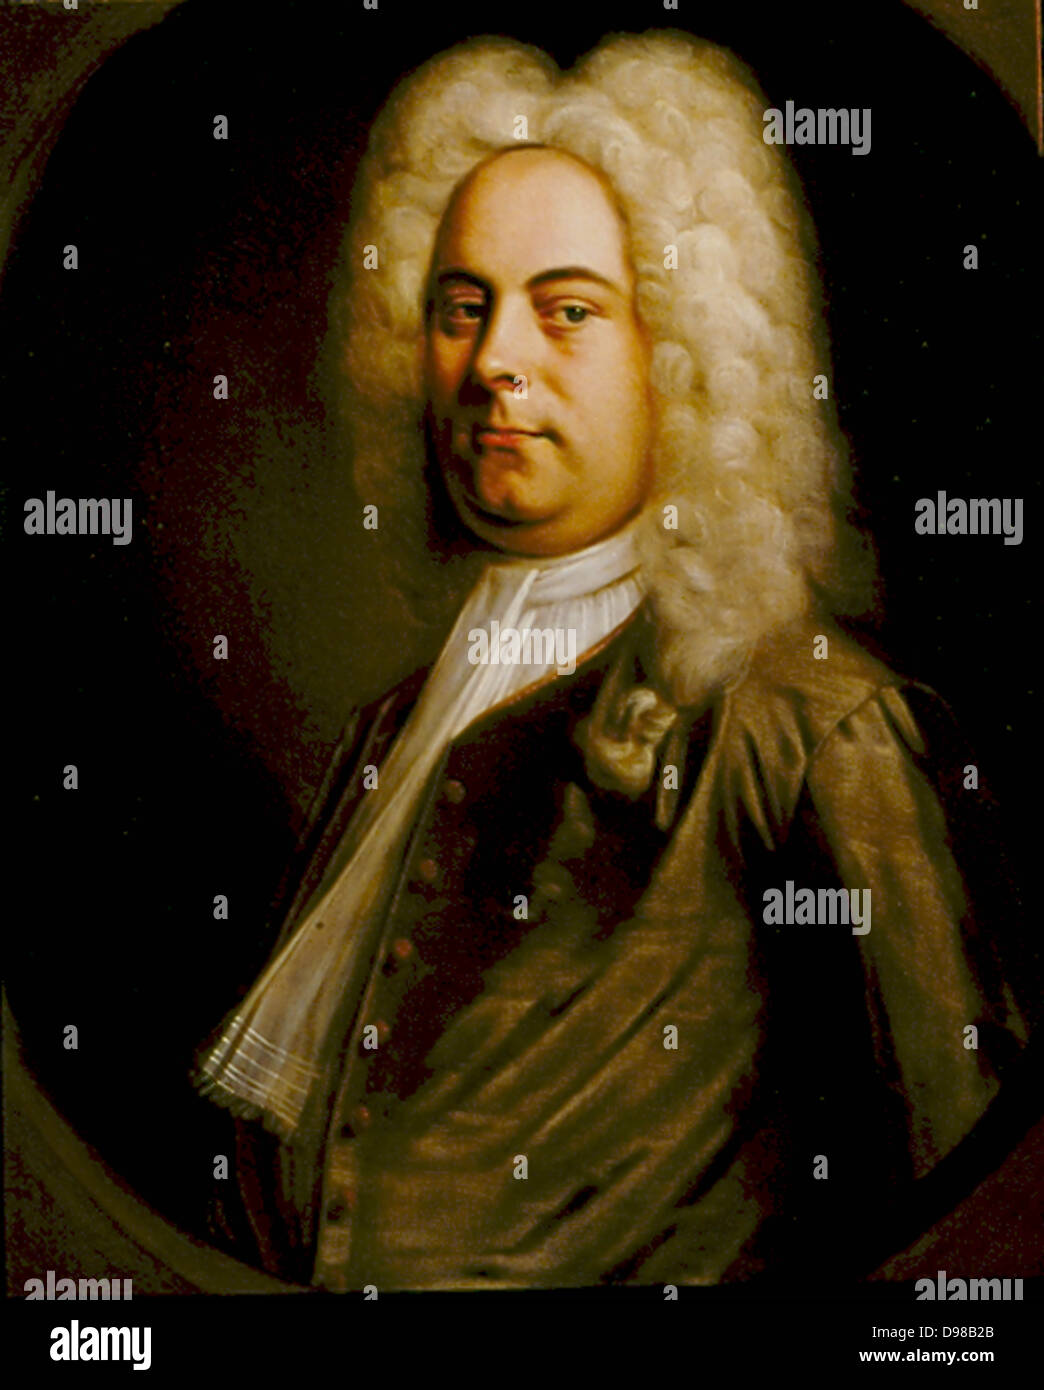 George Frederic Handel (1685-1759), compositeur d'origine allemande qui se sont installés en Angleterre. Portrait de 1726-1728 attribué à Balthasar Denner (1726-1749). Huile sur toile. Banque D'Images